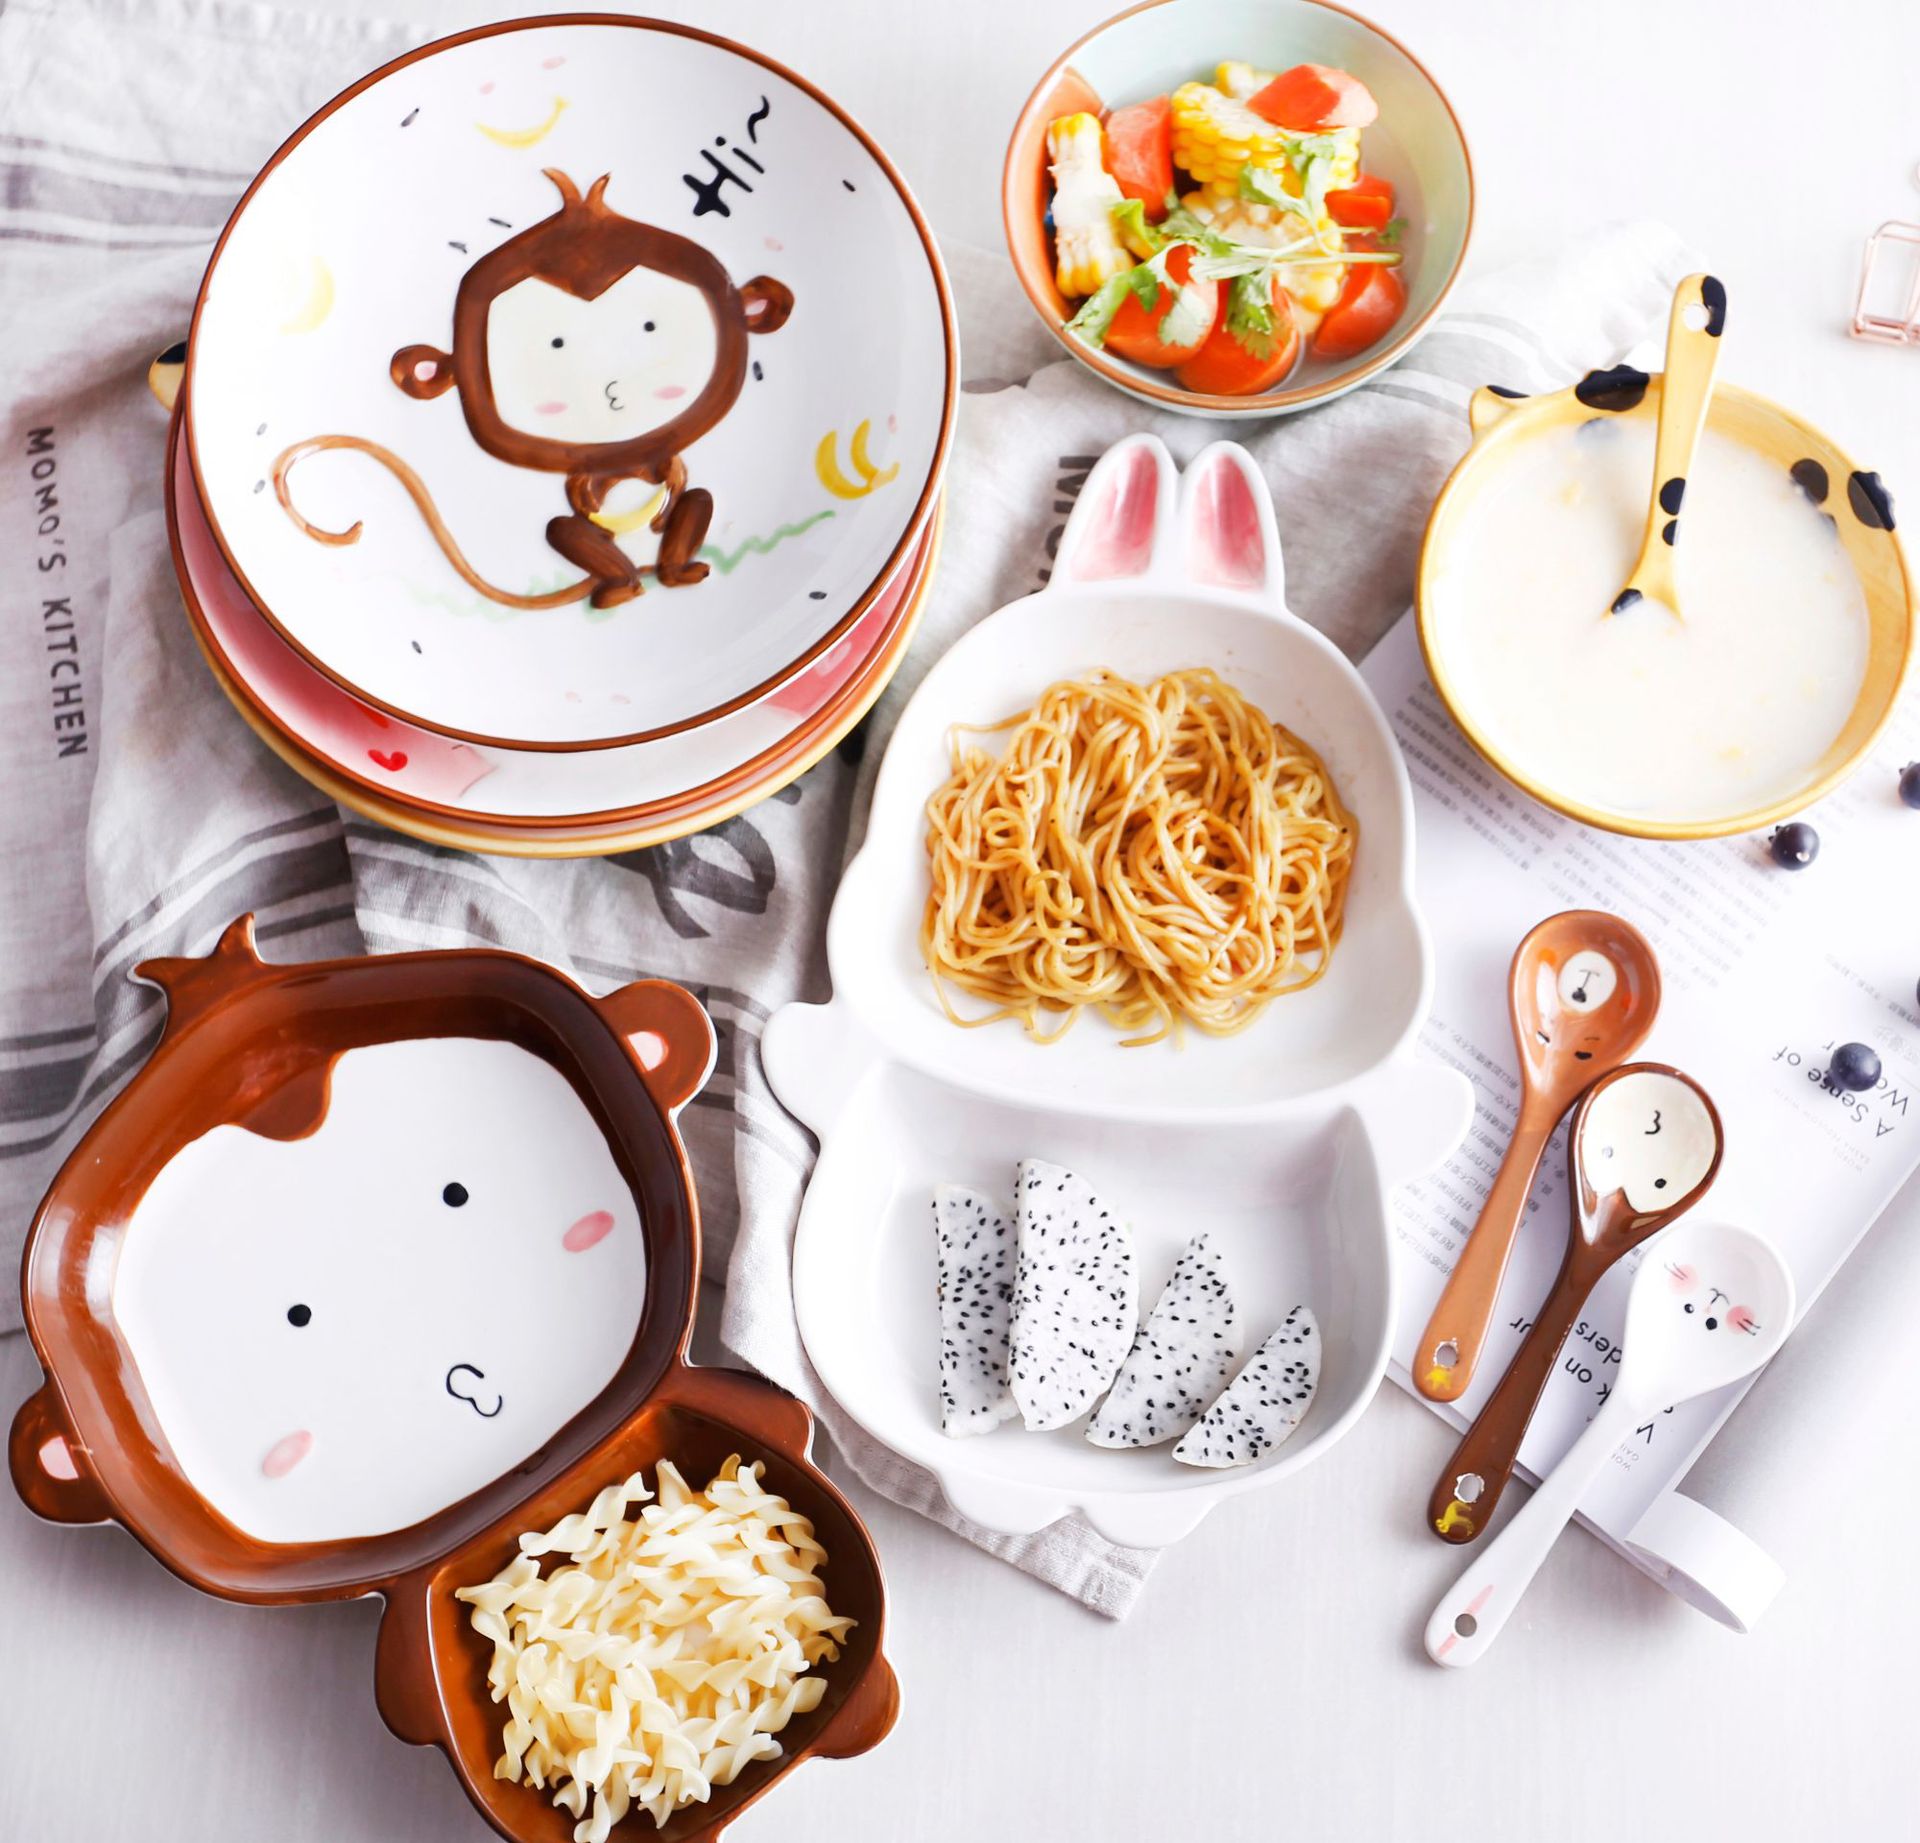 爱美惠 新款卡通动物图案手绘陶瓷餐具家用碗分隔盘多彩儿童瓷